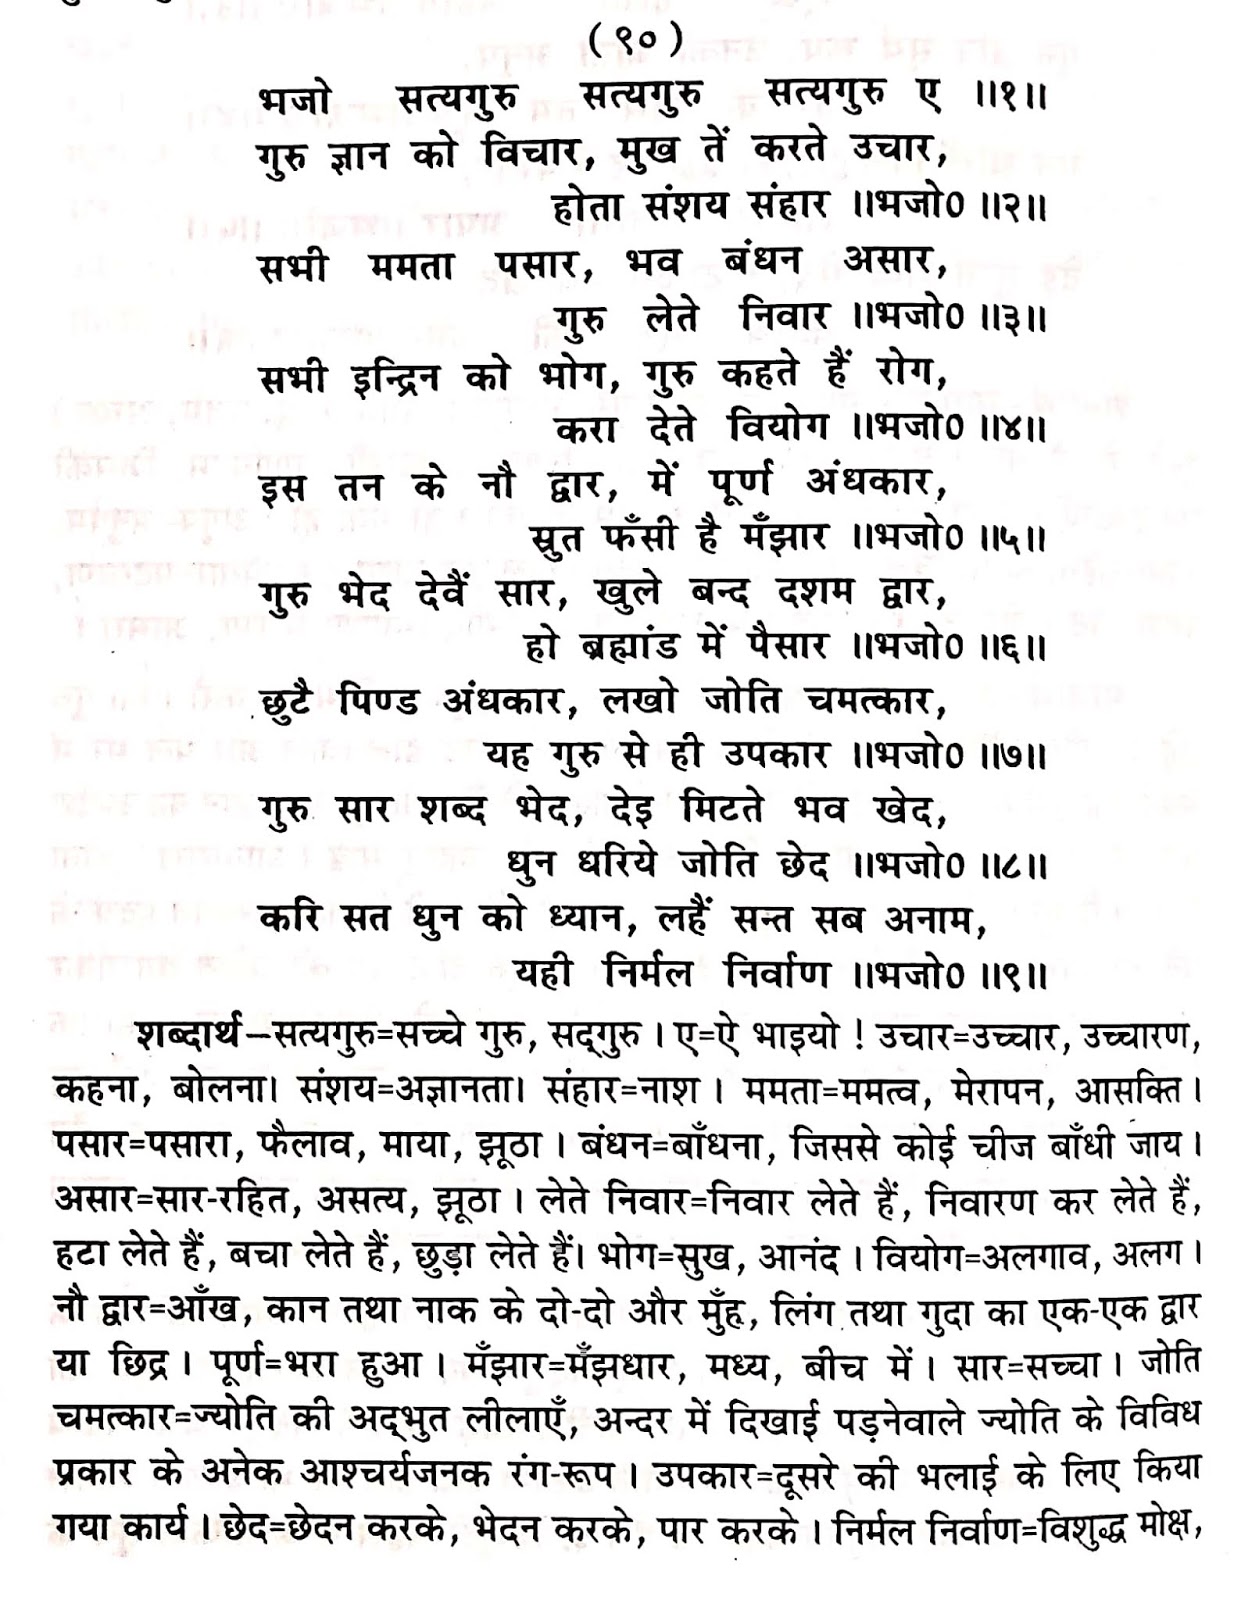 P90, Benefits of gurnam sankirtan "भजो सत्यगुरु सत्यगुरु सत्यगुरु ए,..." महर्षि मेंहीं पदावली अर्थ सहित। पदावली भजन 90 और शब्दार्थ।